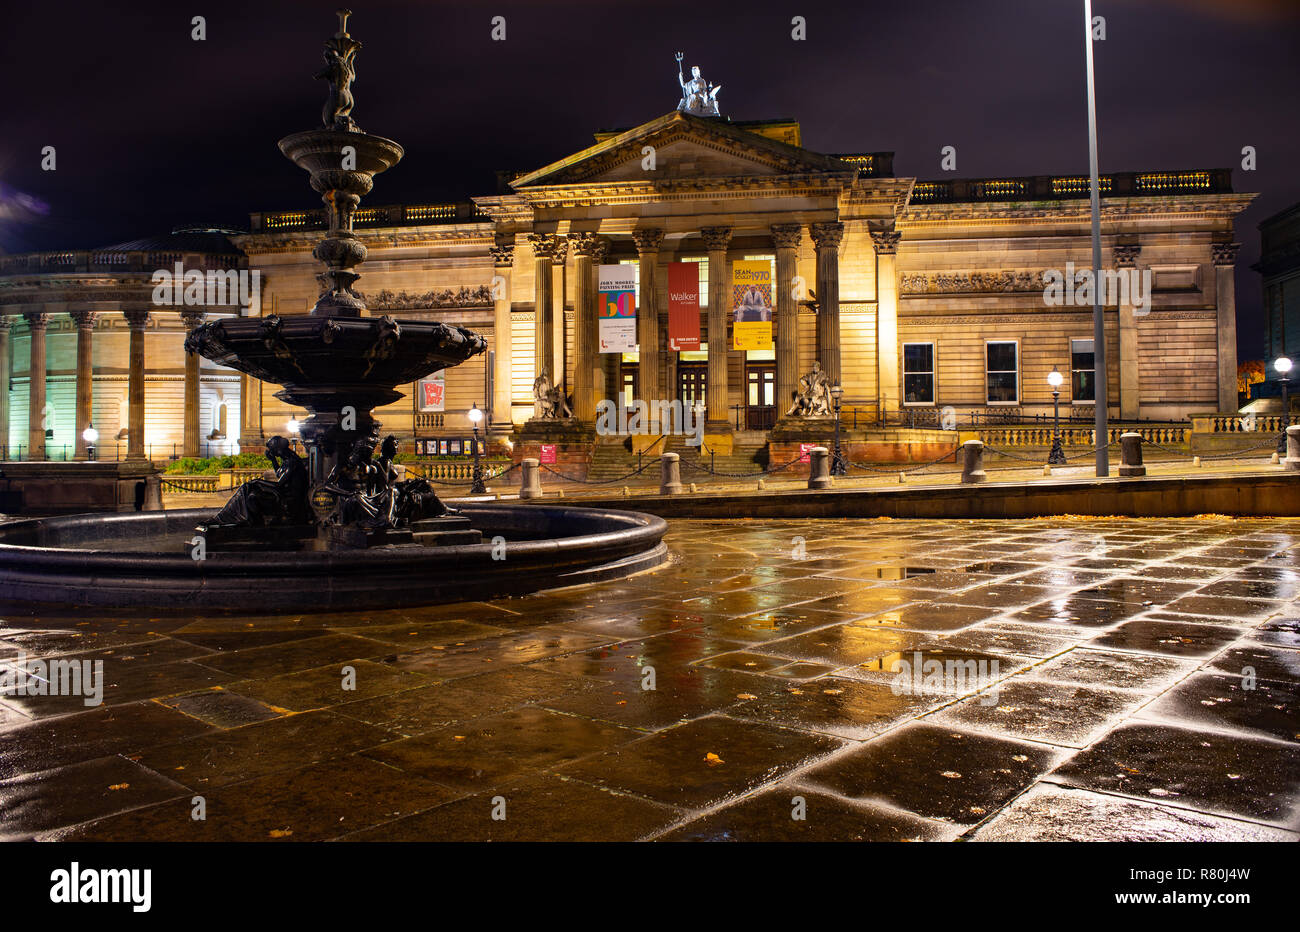 Die Walker Art Gallery, Liverpool, mit den Steble Brunnen im Vordergrund. Bild im Oktober 2018 übernommen. Stockfoto